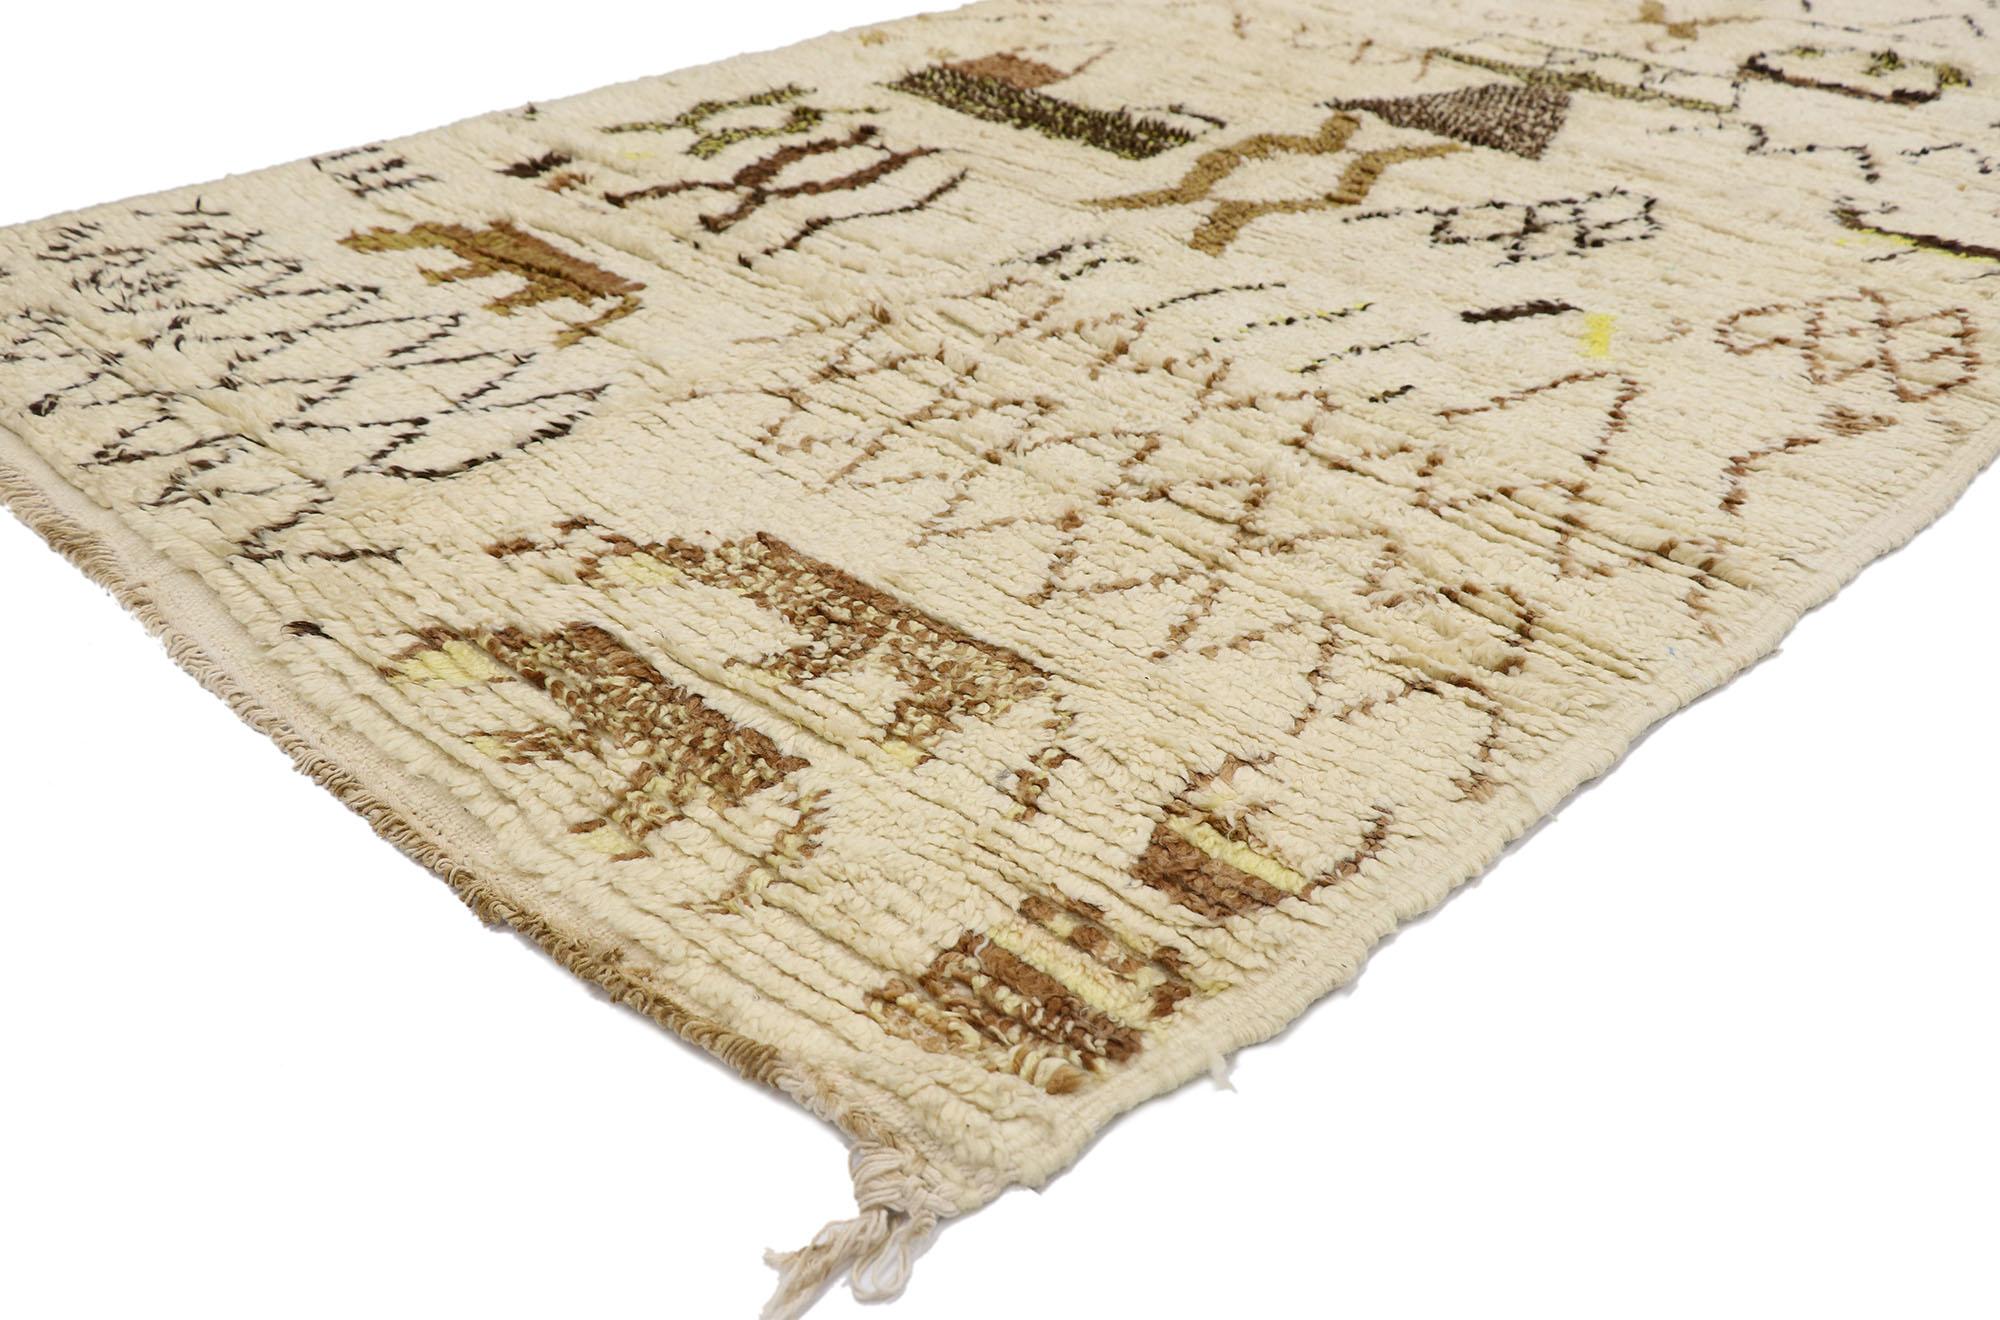 21457 Vintage Berber Marokkanischer Azilal Teppich 05'00 x 09'00. Dieser handgeknüpfte marokkanische Azilal-Teppich aus alter Berberwolle besticht durch seine Schlichtheit, seine unglaublichen Details und seine Textur. Das abgewetzte beigefarbene